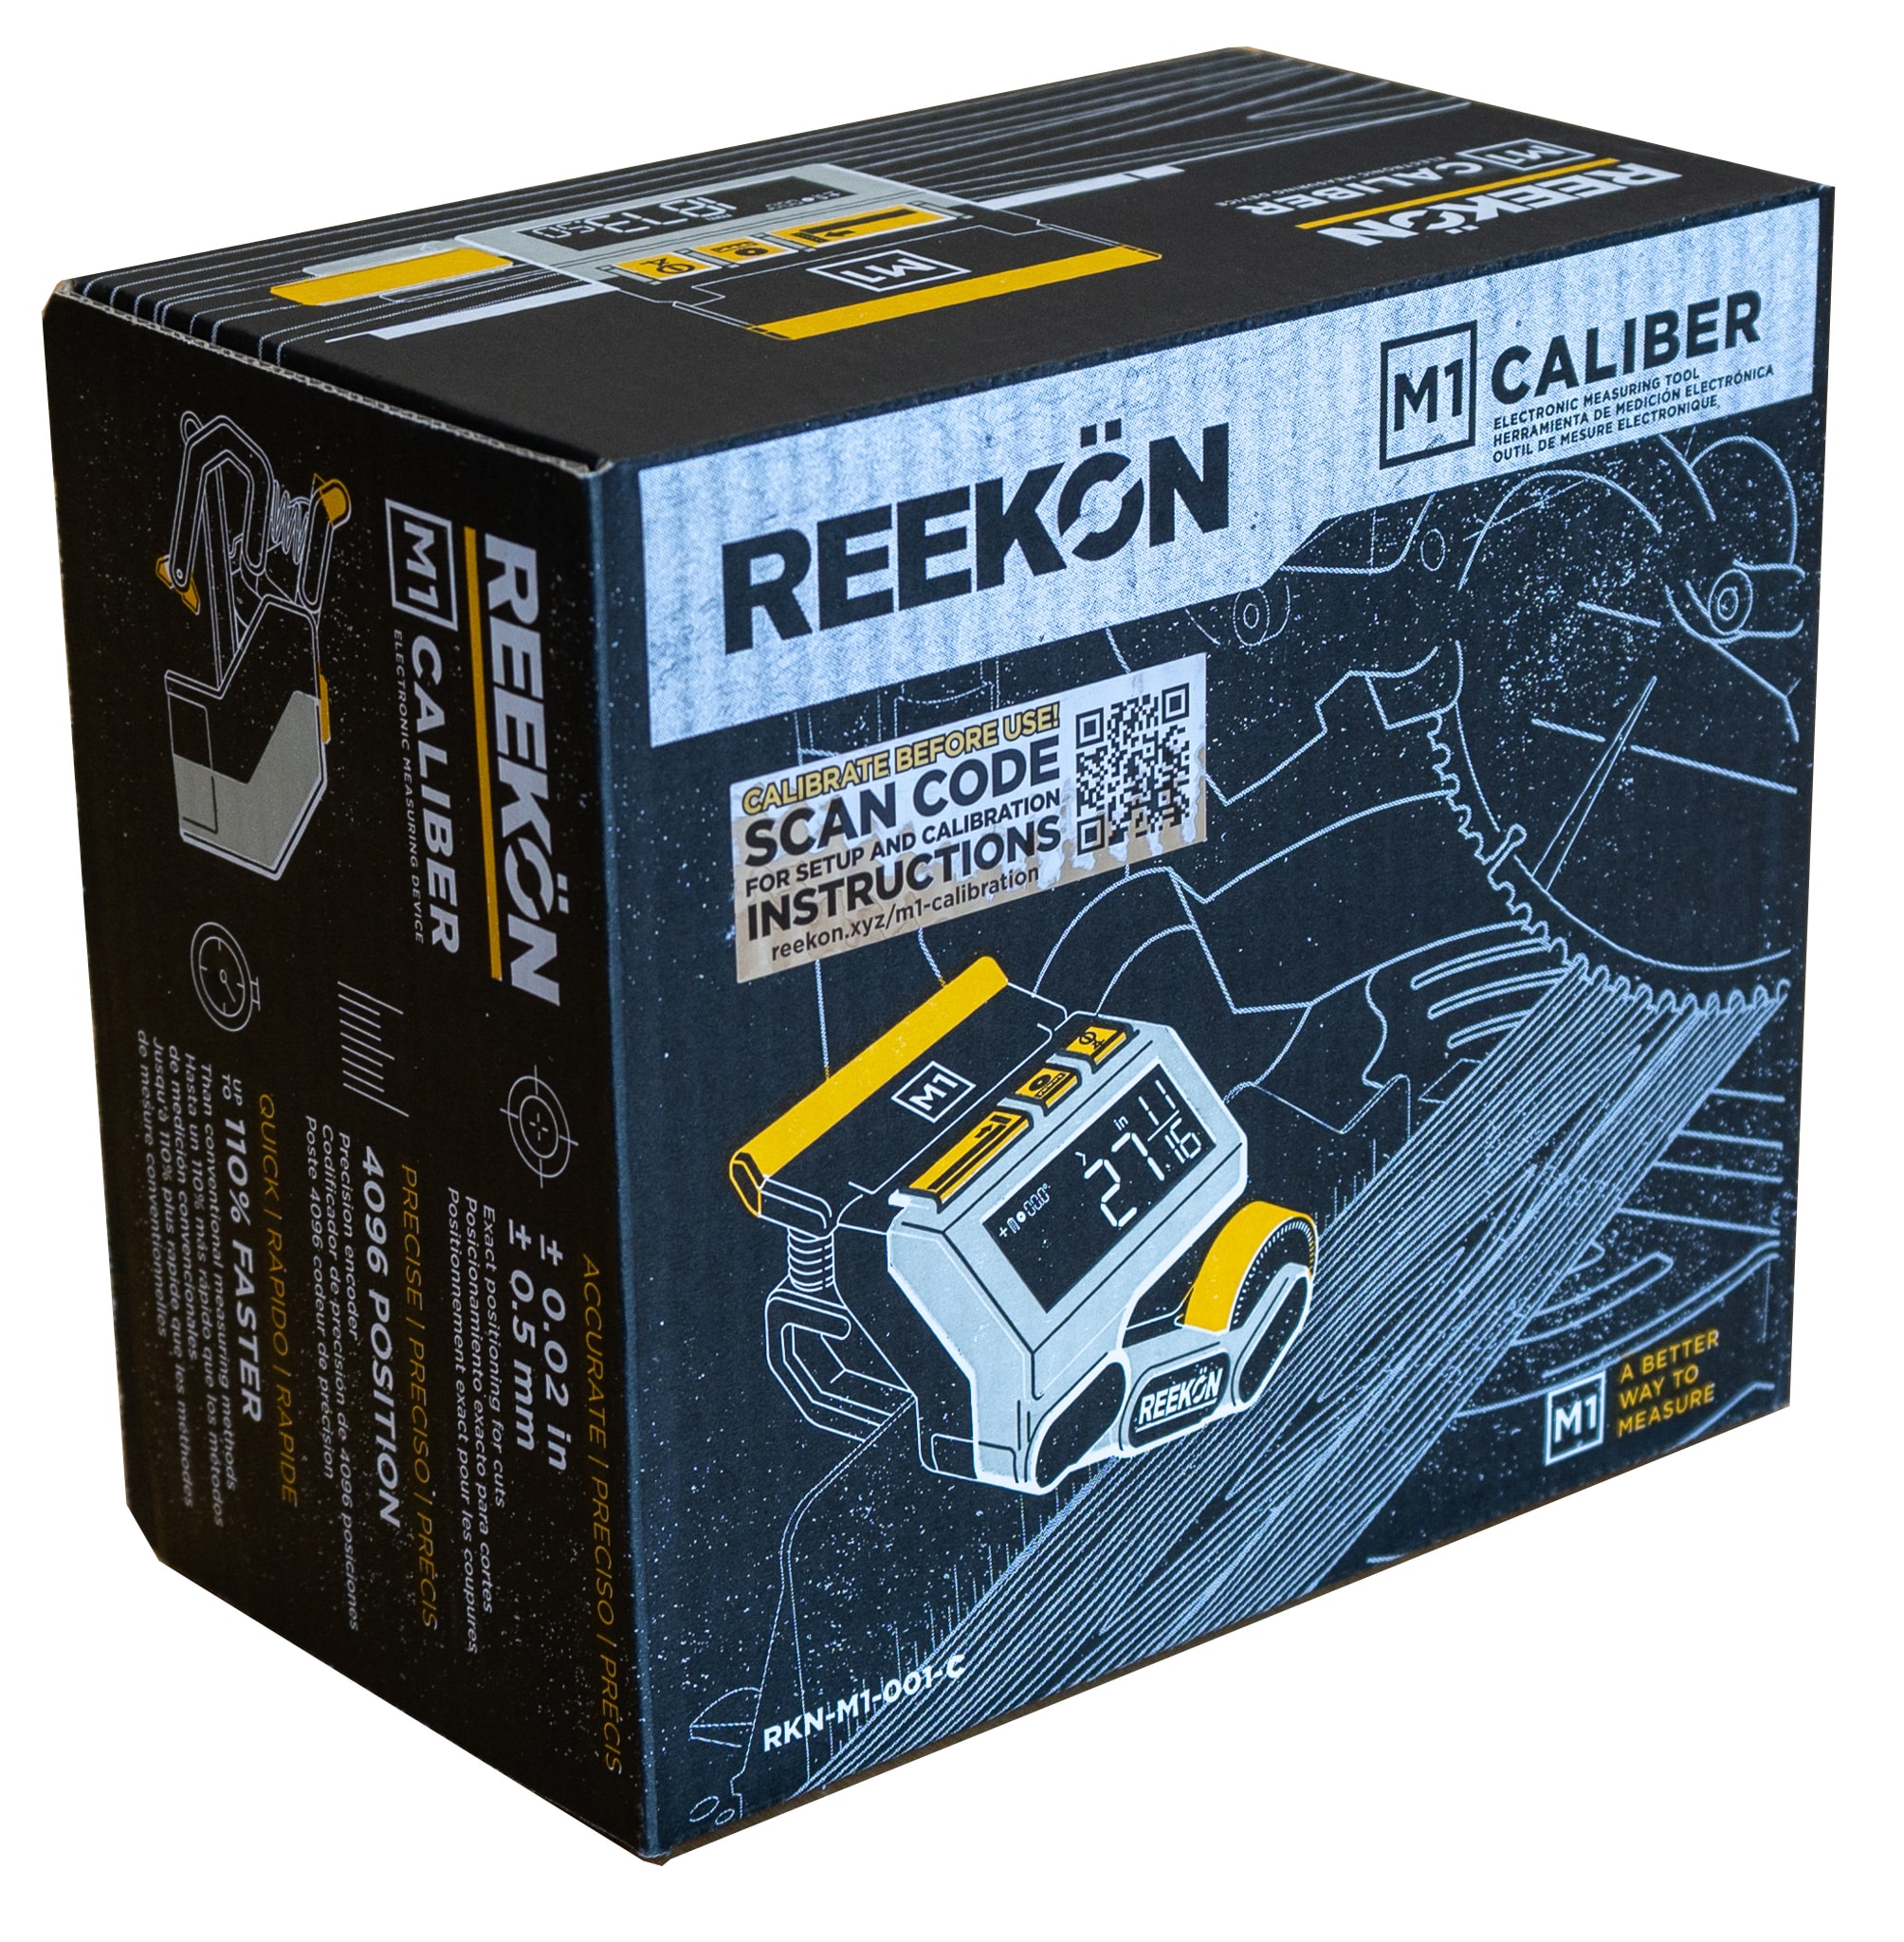 Buy Rekon Tape Measure Digital online